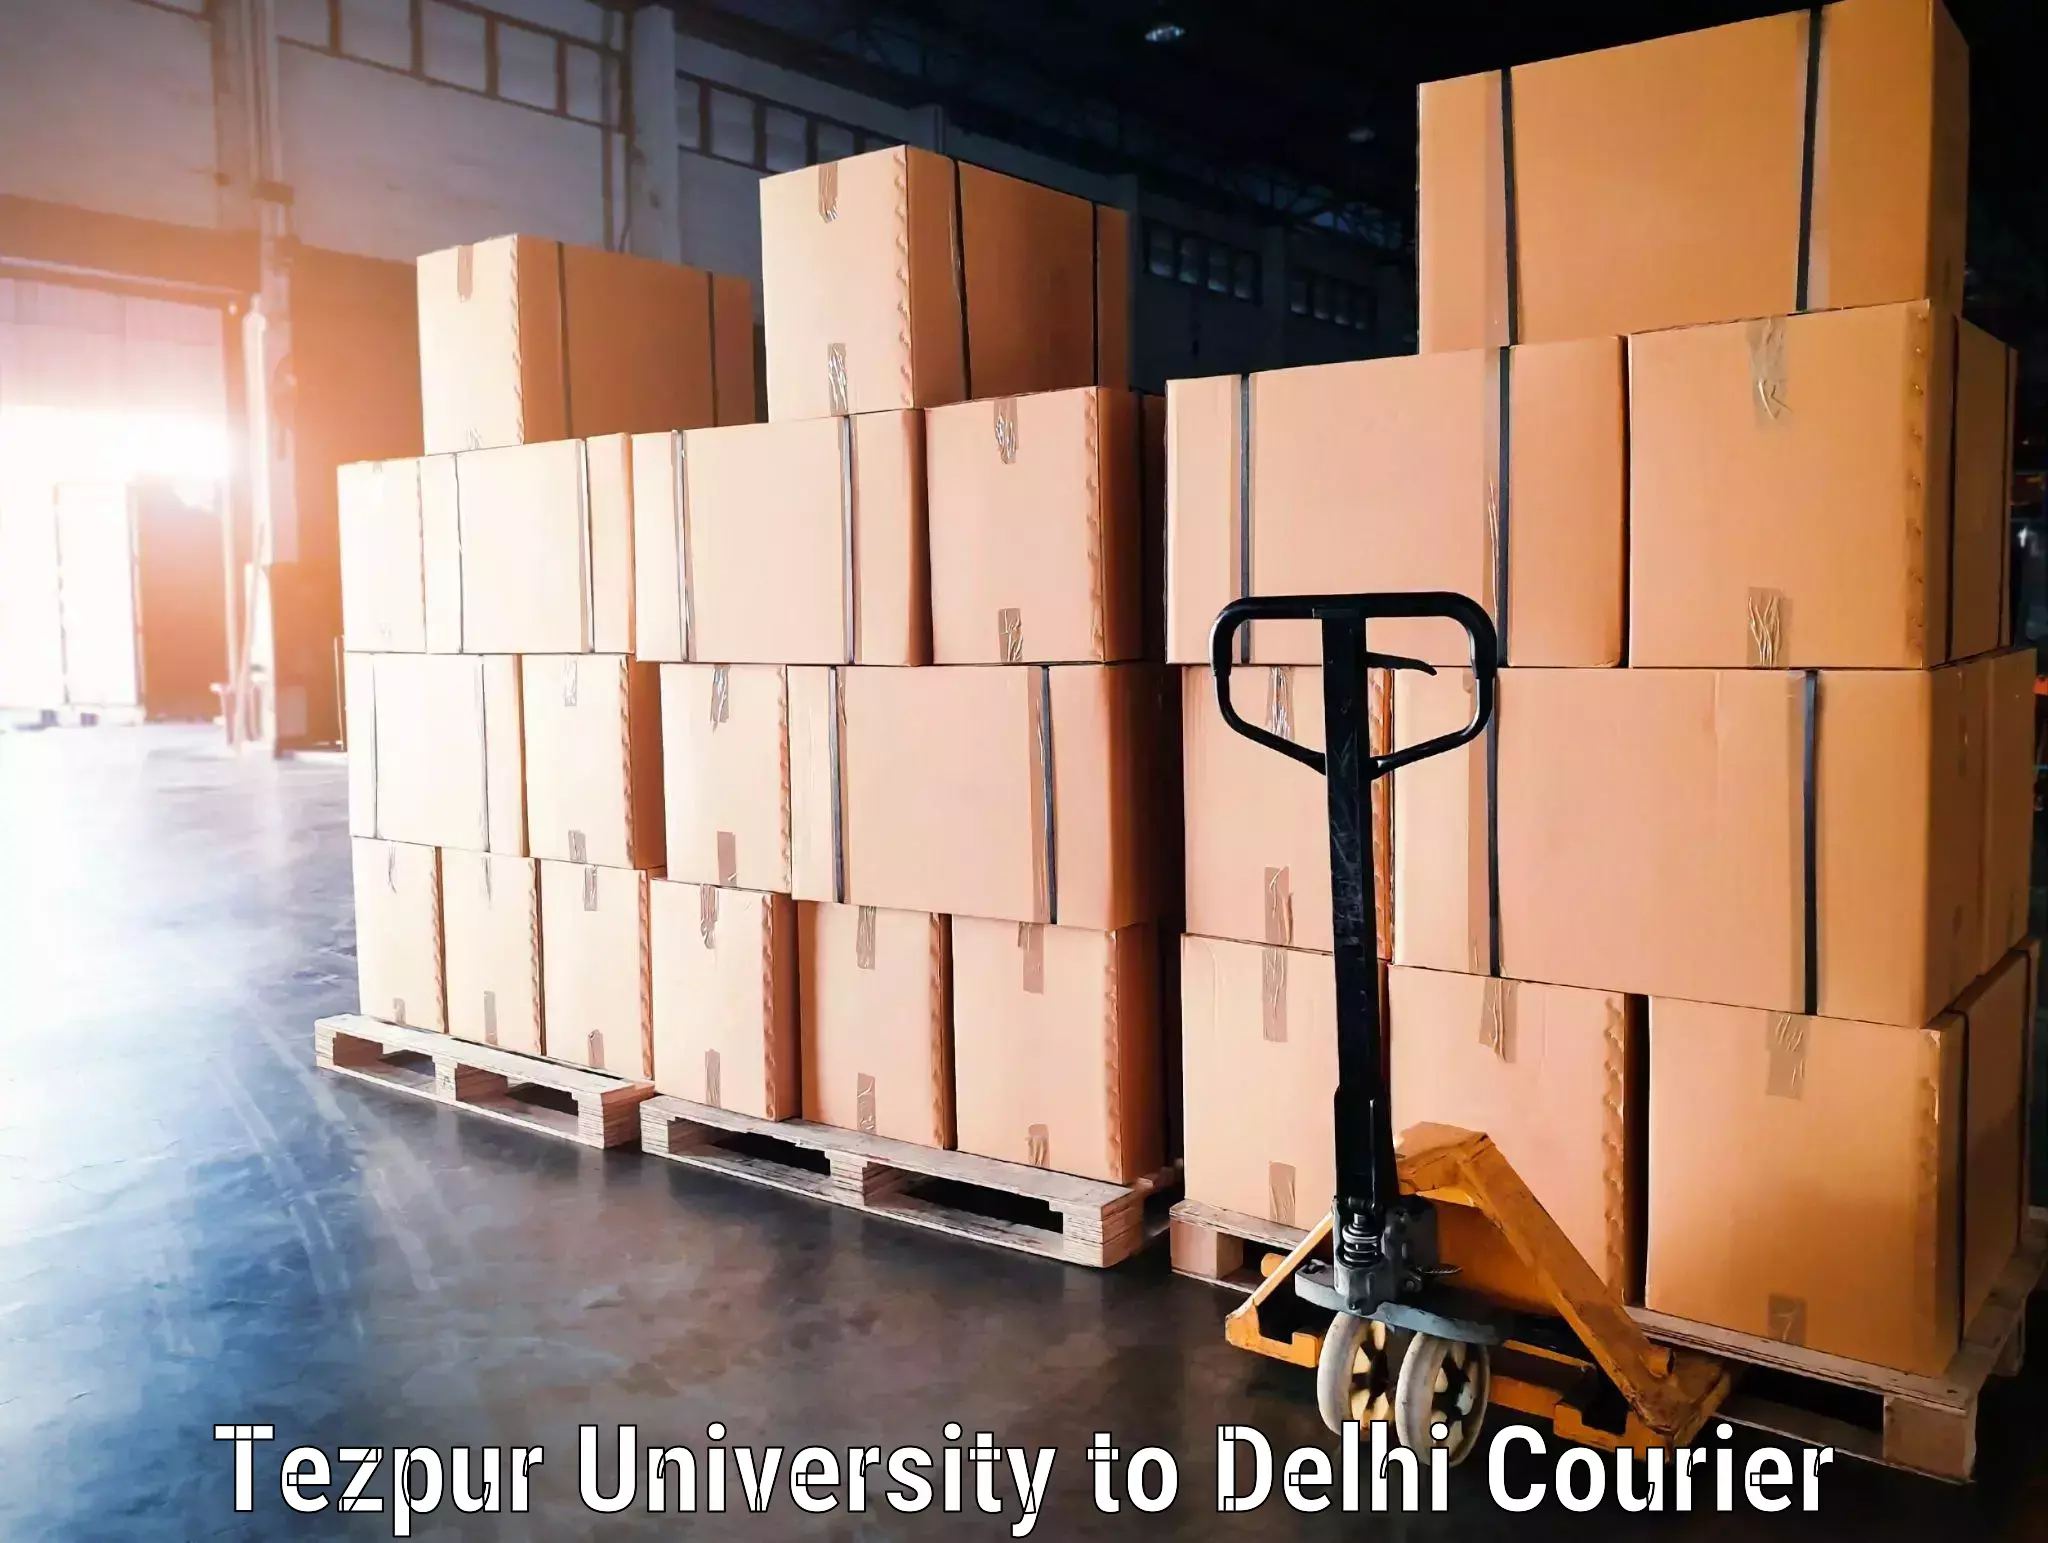 Door-to-door baggage service Tezpur University to Delhi